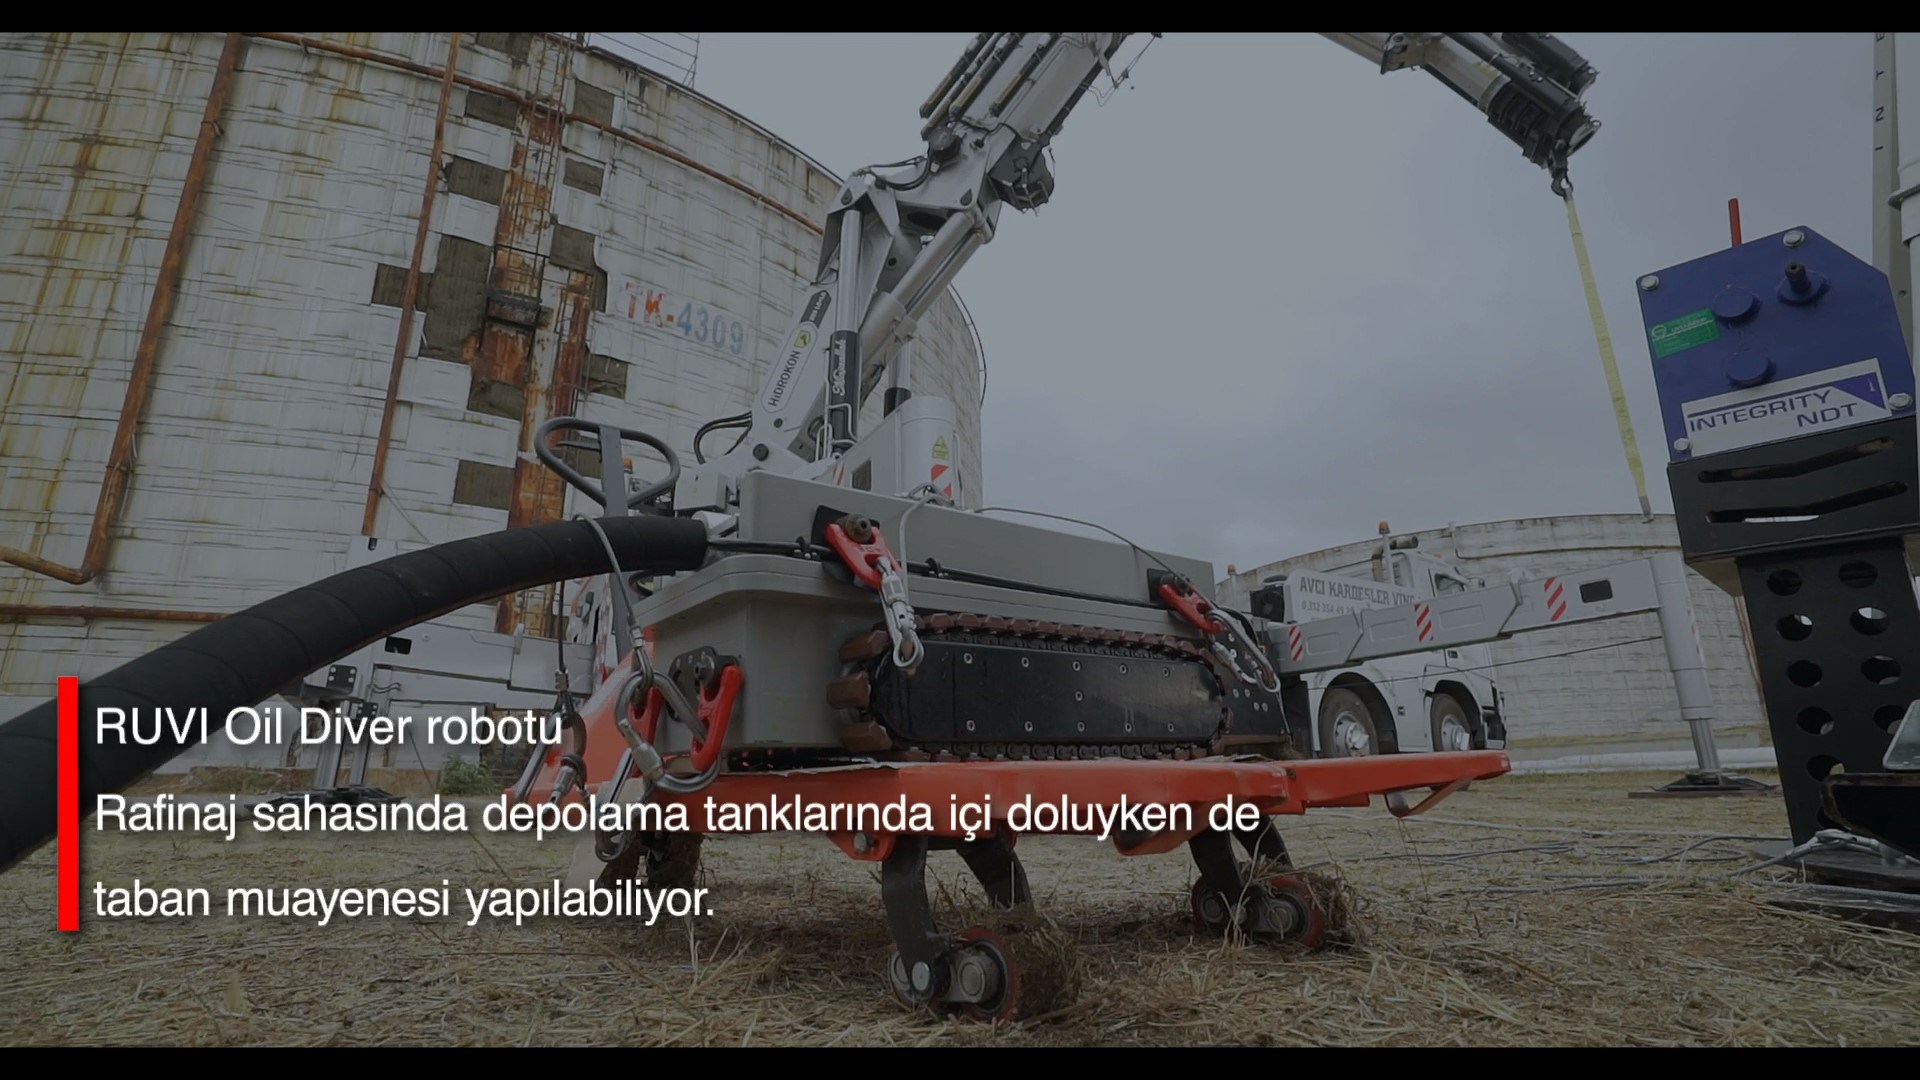 Tüpraş'tan robotik teknoloji yatırımı